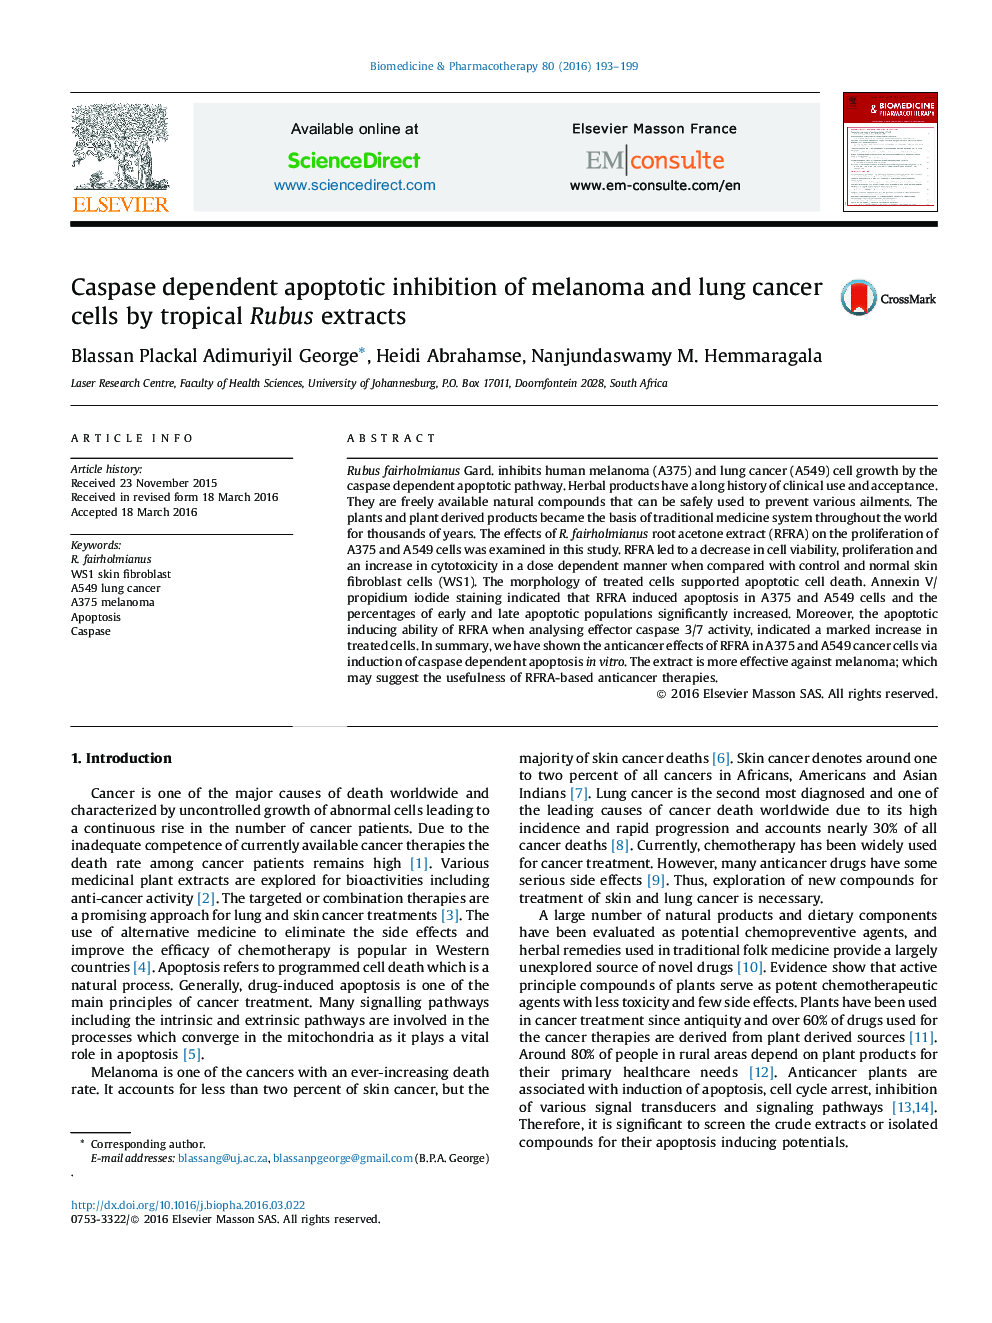 مهار آپوپتوز وابسته به کاسپاز ملانوم و سلول های سرطانی ریه توسط عصاره های روبوس گرمسیری 